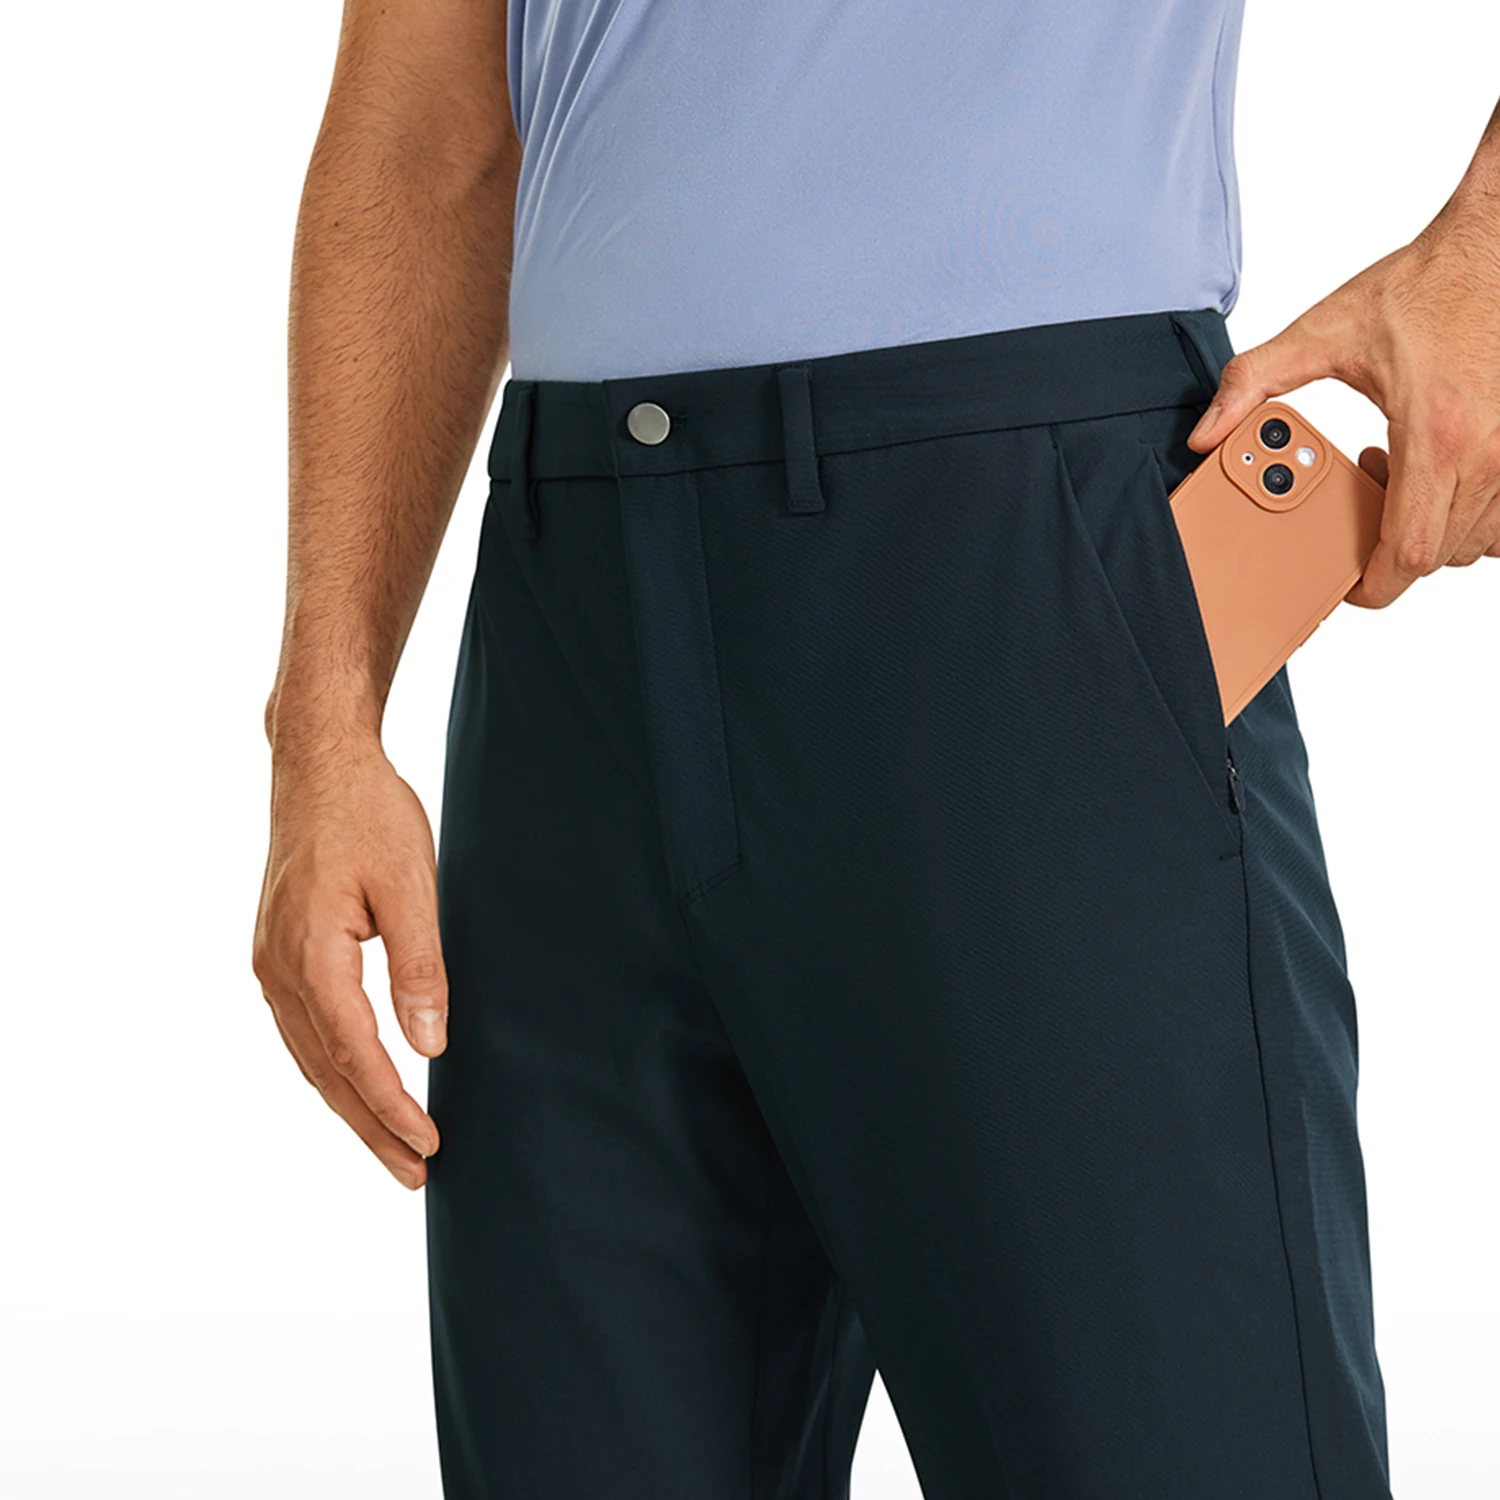 CRZ YOGA pantaloni da Golf Comfort per tutto il giorno da uomo-34 